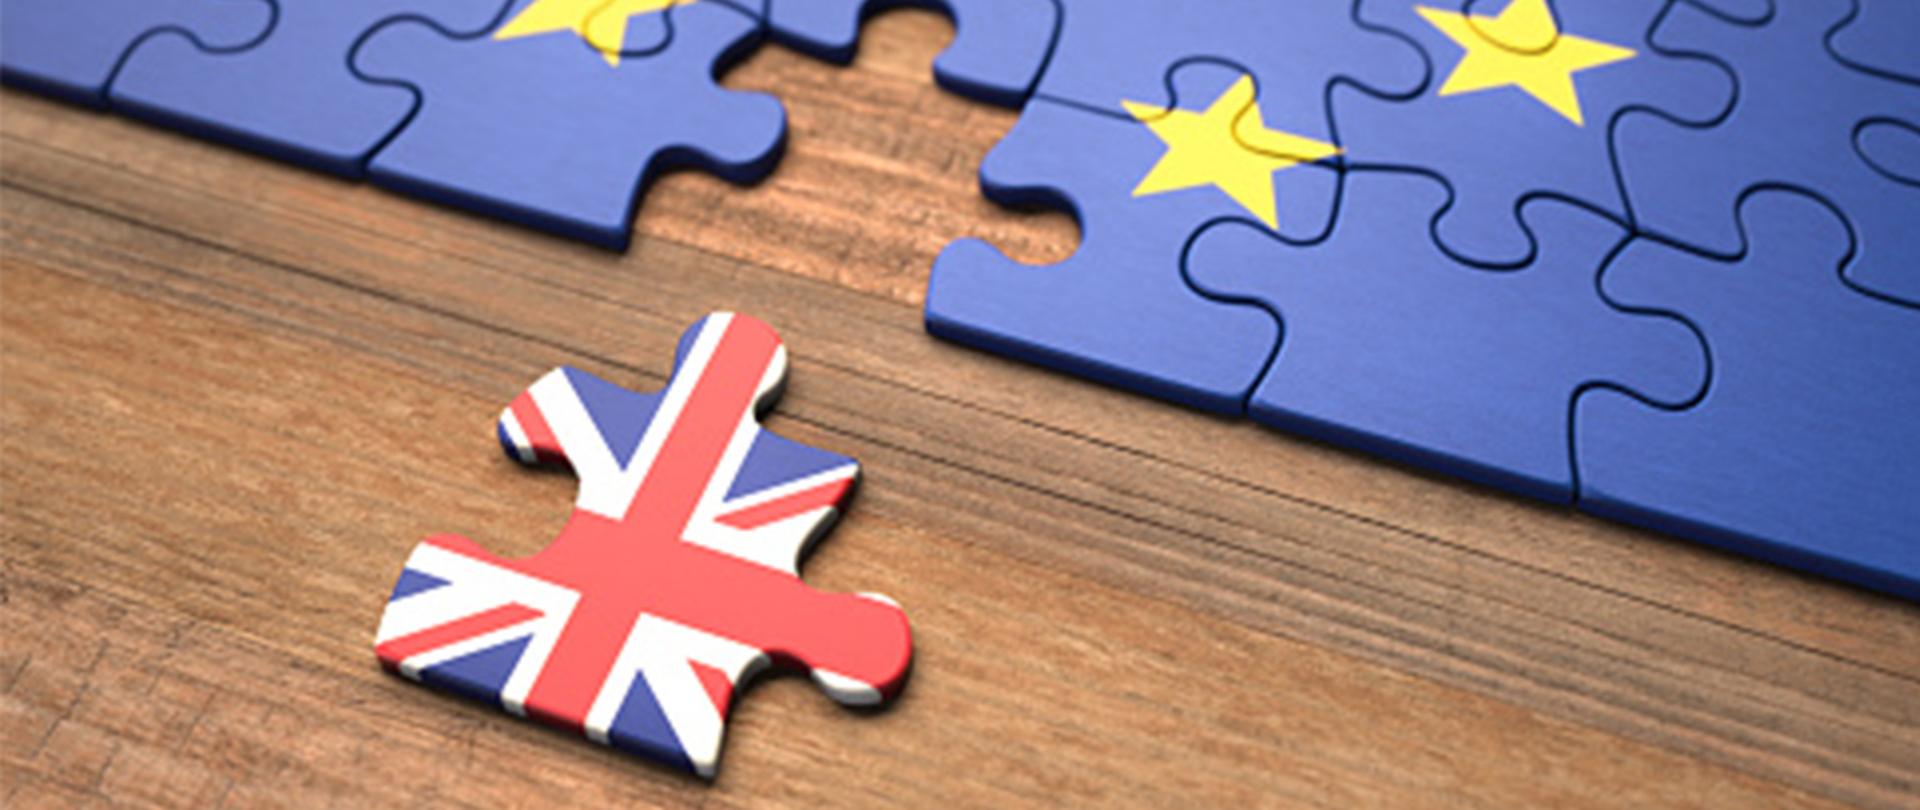 Na zdjęciu: puzzle z flagą UE od których odłączony jest jeden element, na którym namalowana jest flaga Wielkiej Brytanii 